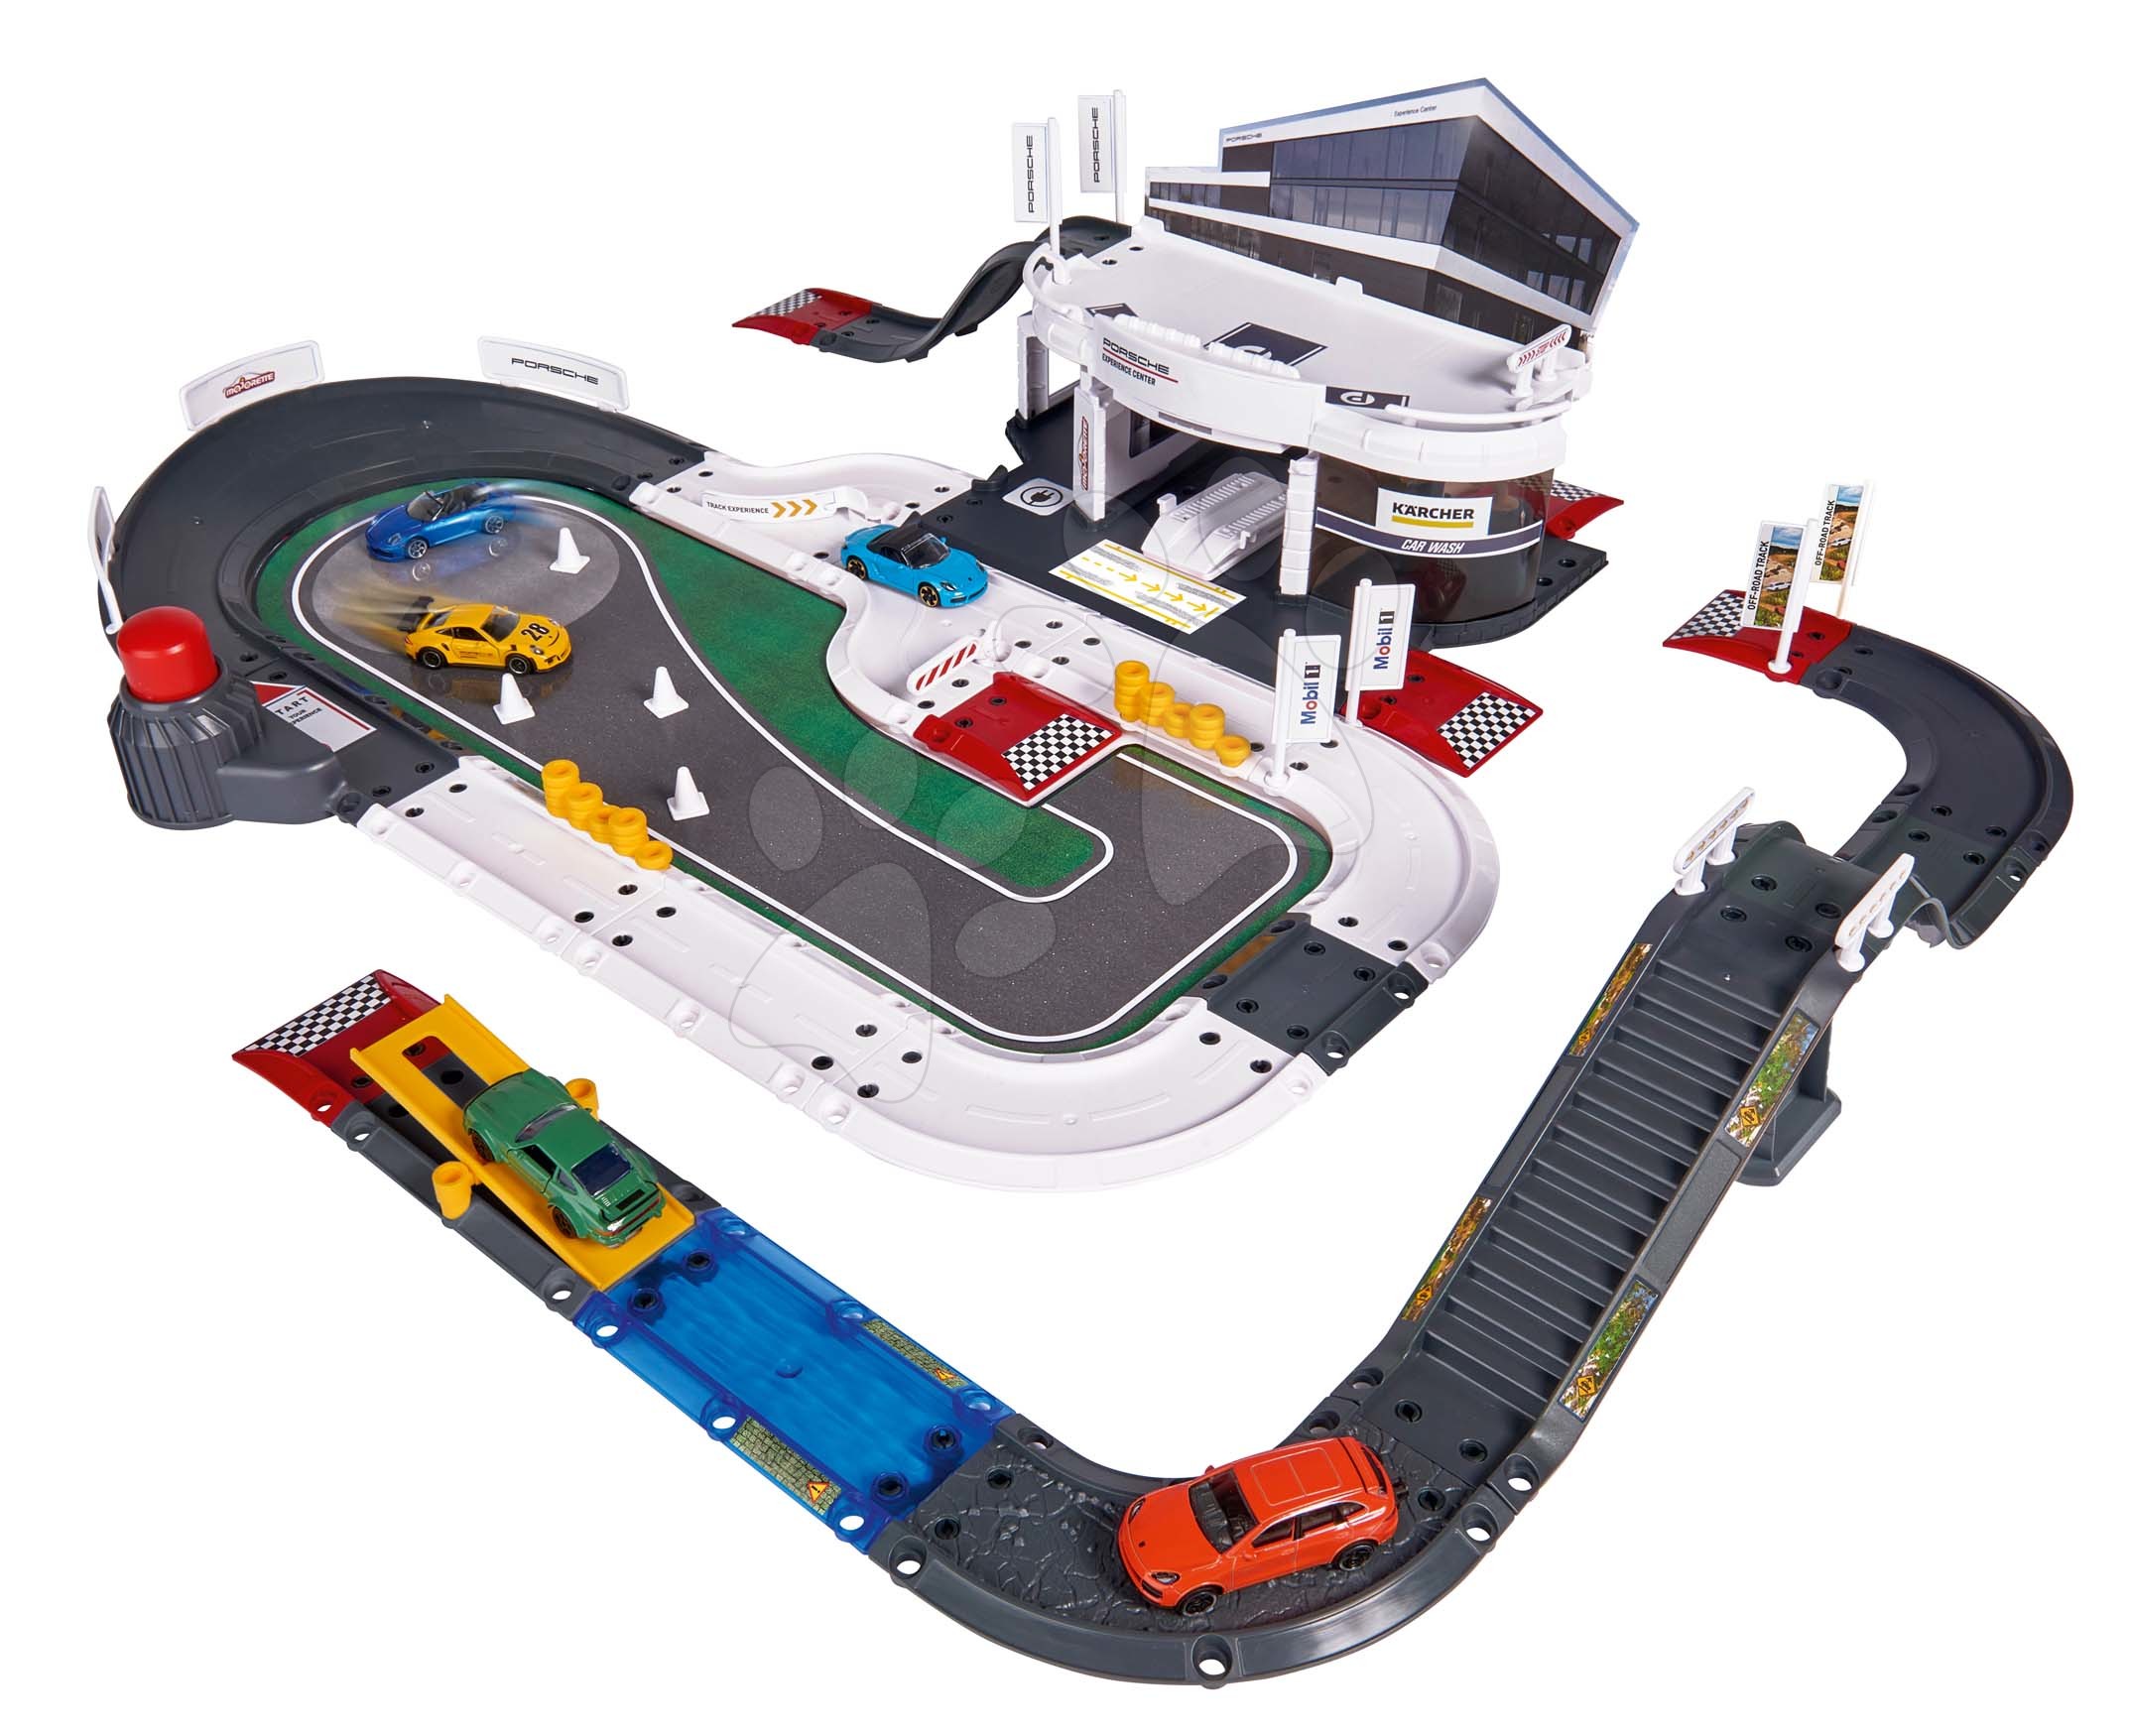 Garage - Garagen-Testzentrum Porsche Experience Center Majorette 80 Teile 5 Spielzeugautos ab 5 Jahren